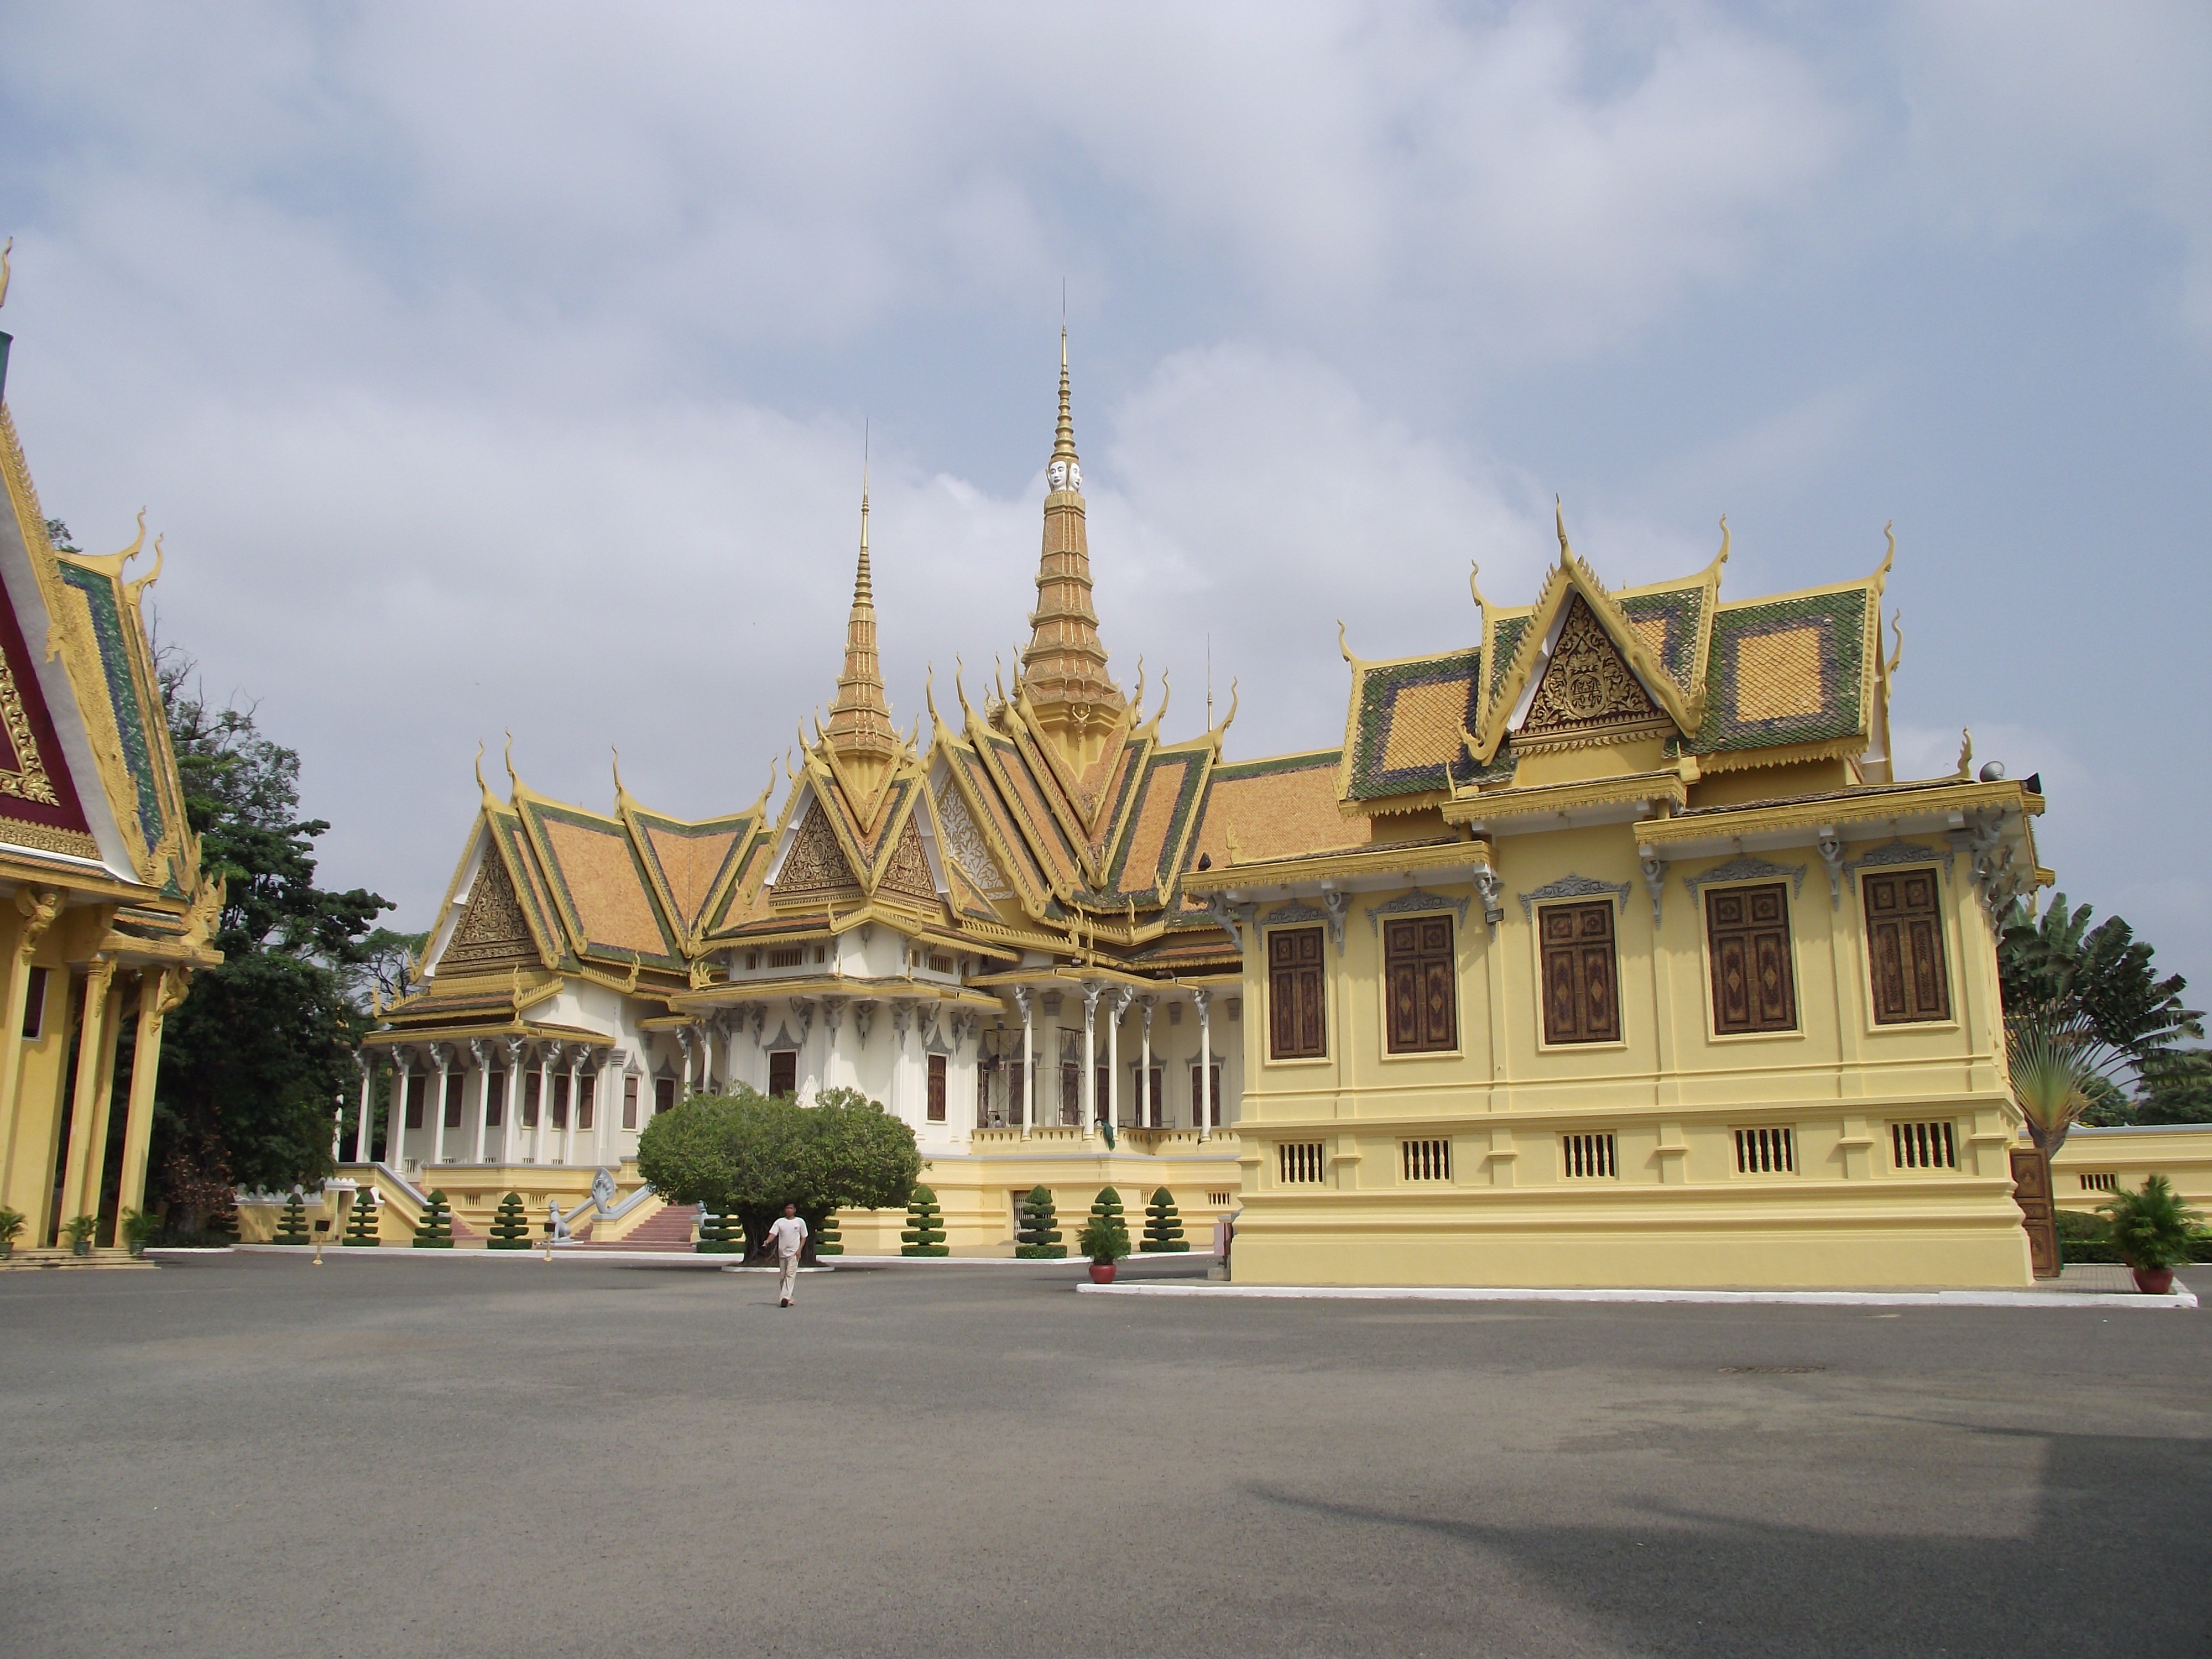 广阔的王宫建筑风格为柬埔寨传统样式,但装饰却是暹罗风格